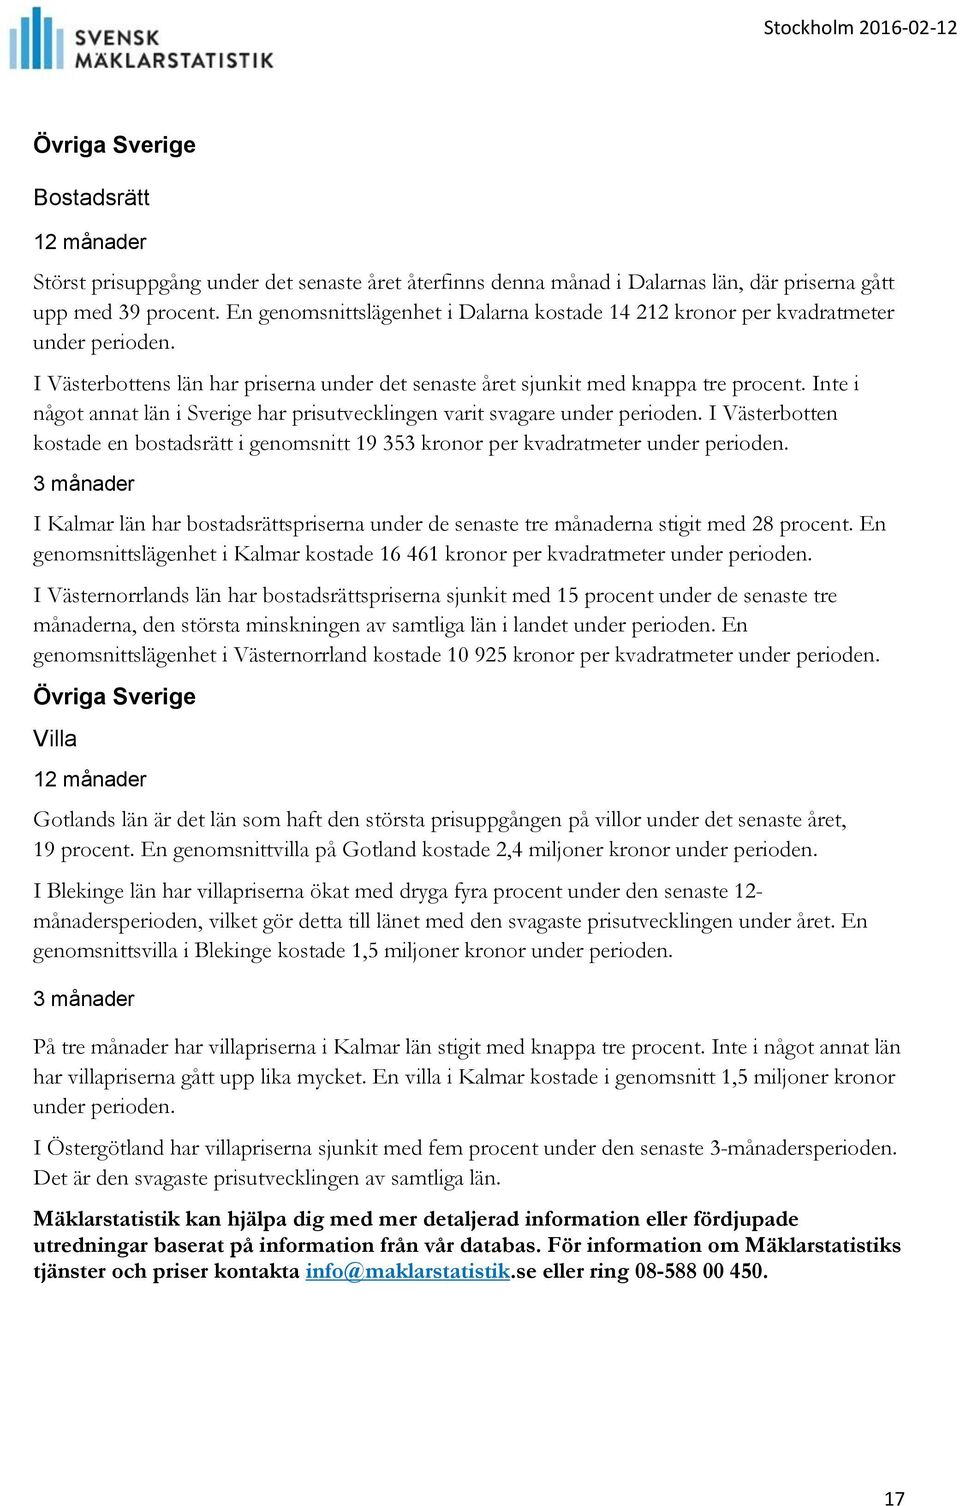 Inte i något annat län i Sverige har prisutvecklingen varit svagare under perioden. I Västerbotten kostade en bostadsrätt i genomsnitt 19 353 kronor per kvadratmeter under perioden.